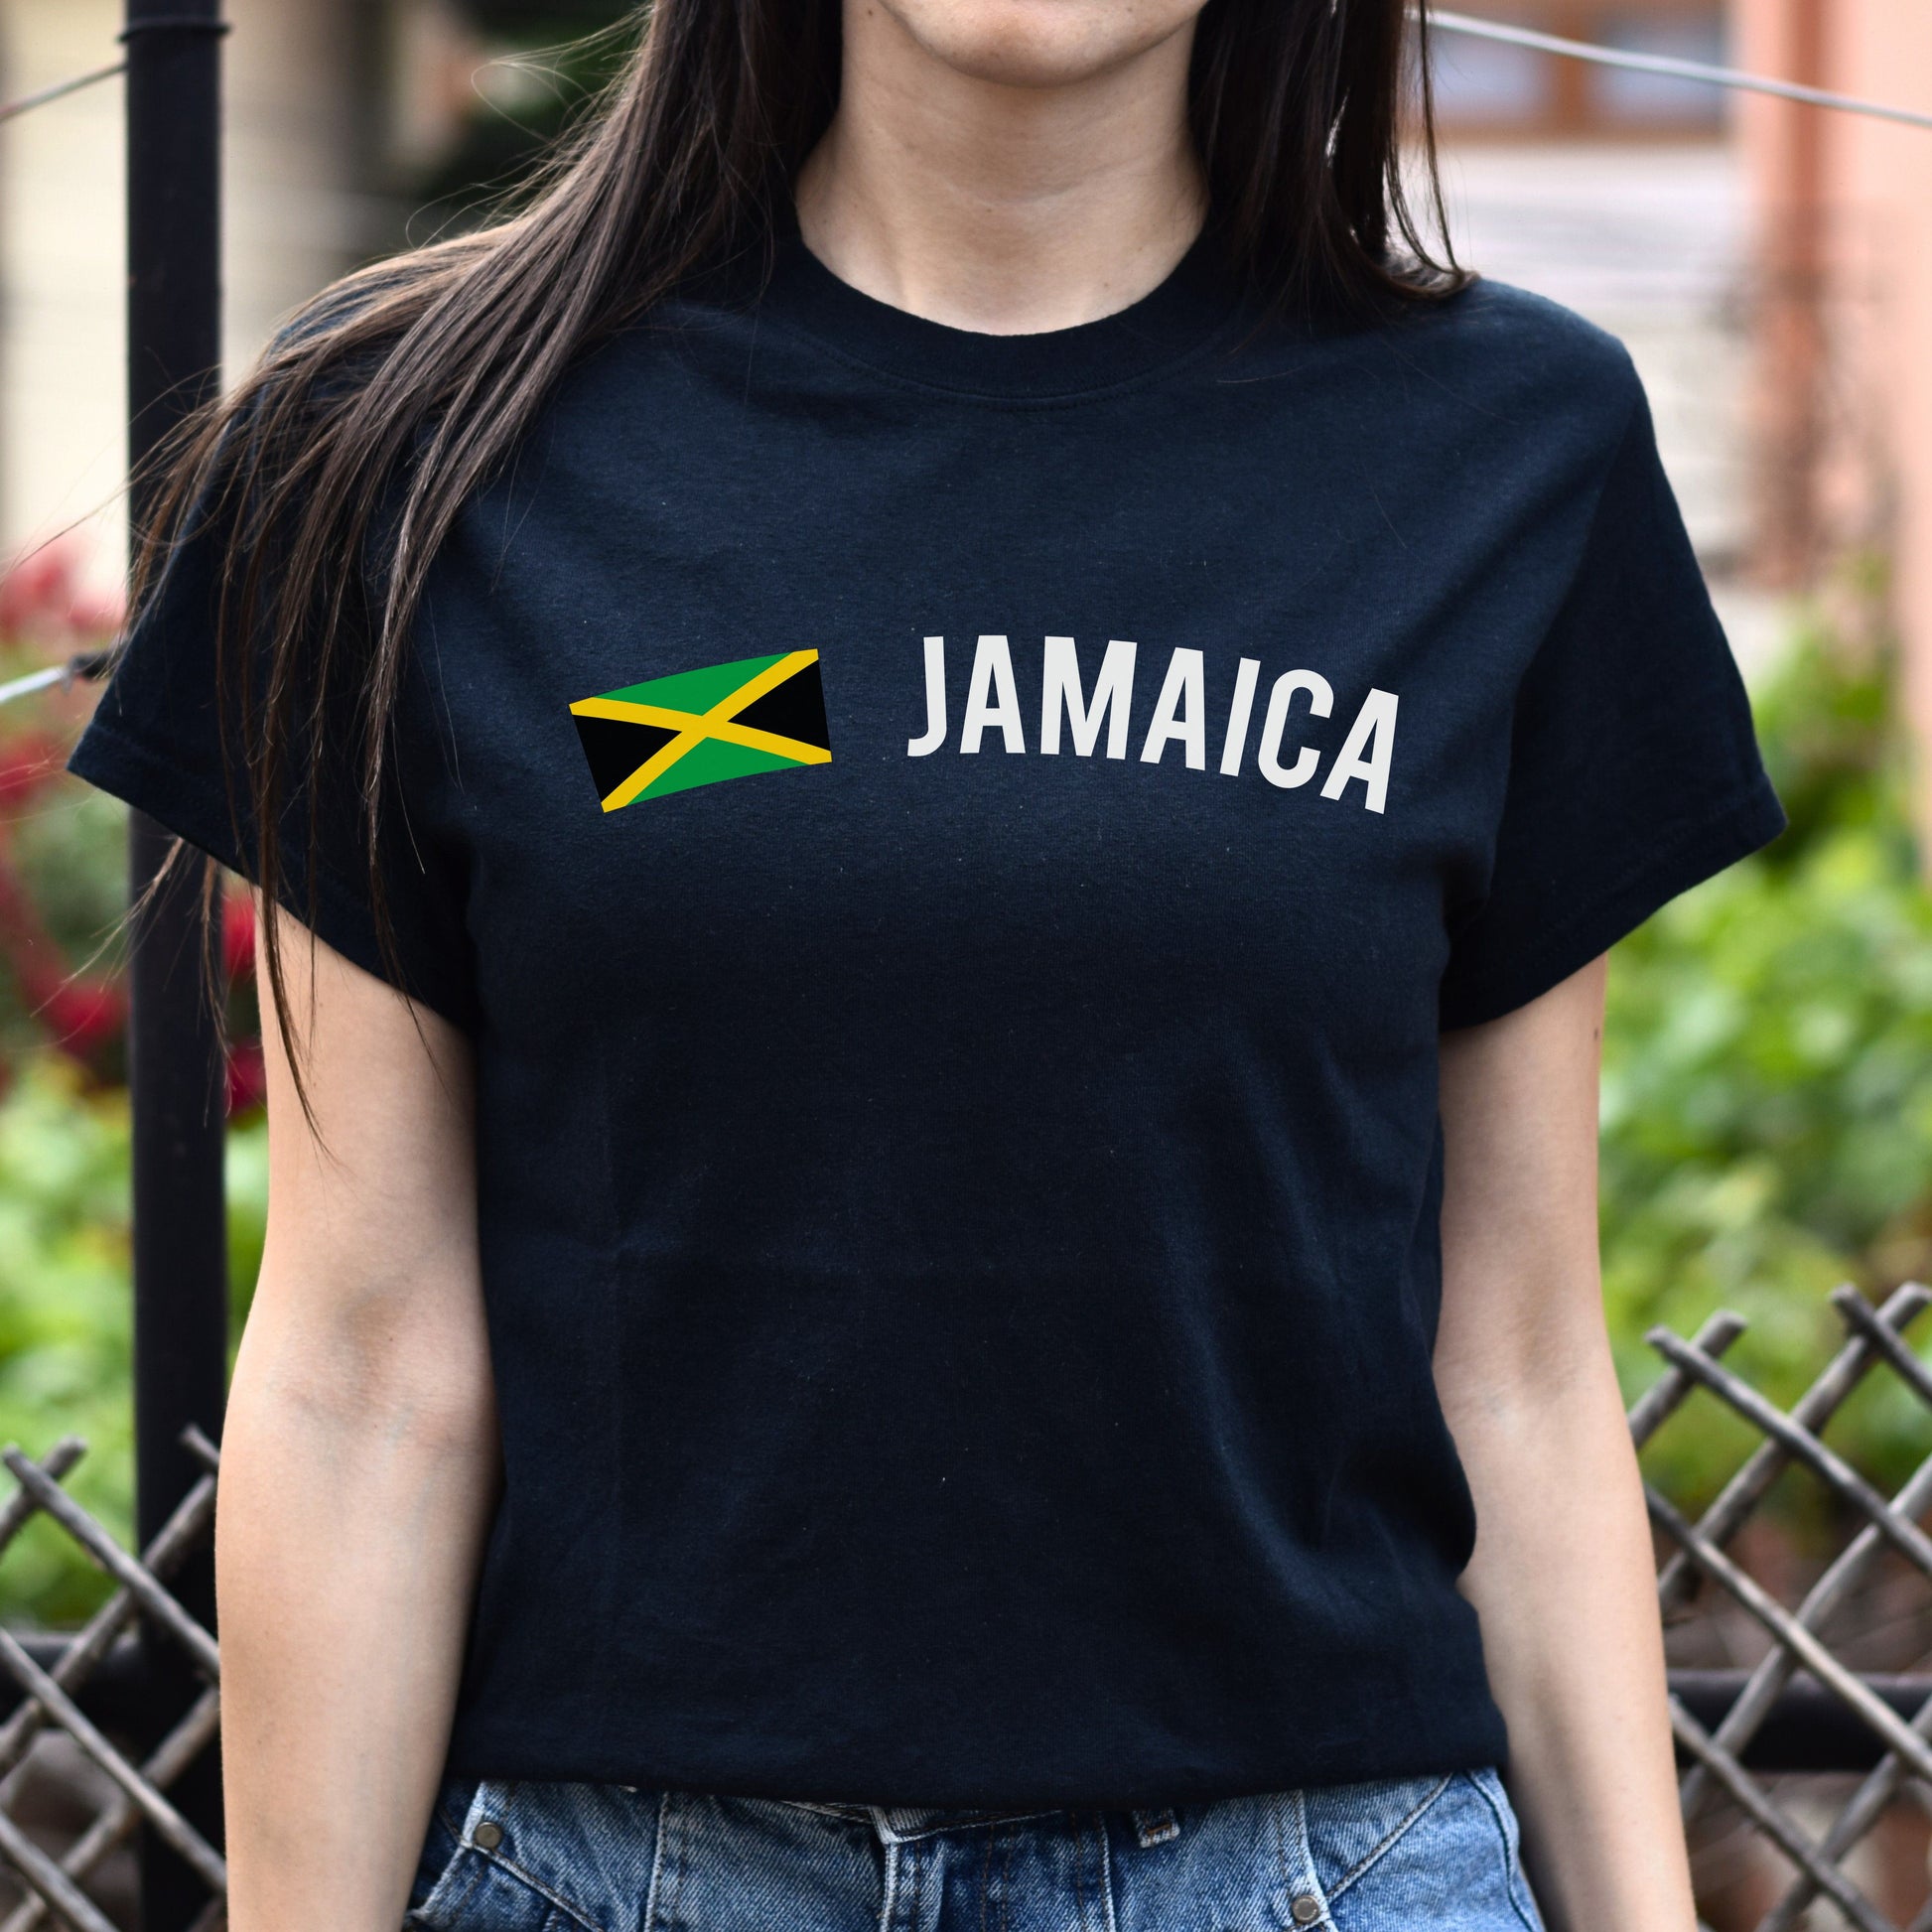 Jamaica Unisex T-shirt gift Jamaica flag tee Kingston White Black Dark Heather-Black-Family-Gift-Planet